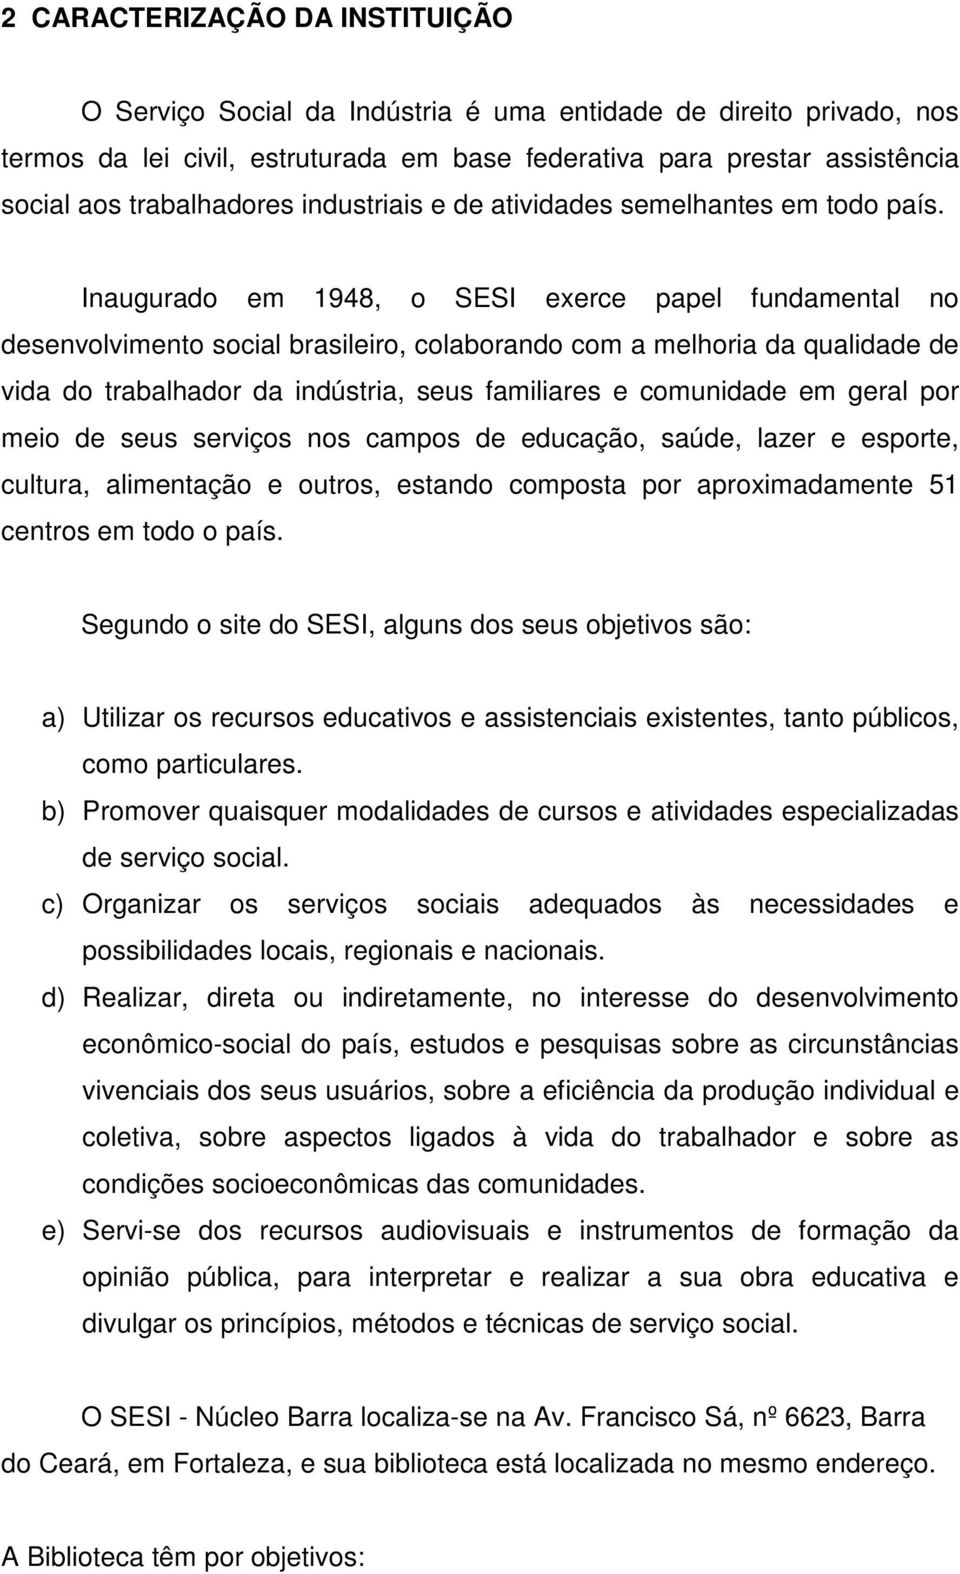 Inaugurado em 1948, o SESI exerce papel fundamental no desenvolvimento social brasileiro, colaborando com a melhoria da qualidade de vida do trabalhador da indústria, seus familiares e comunidade em